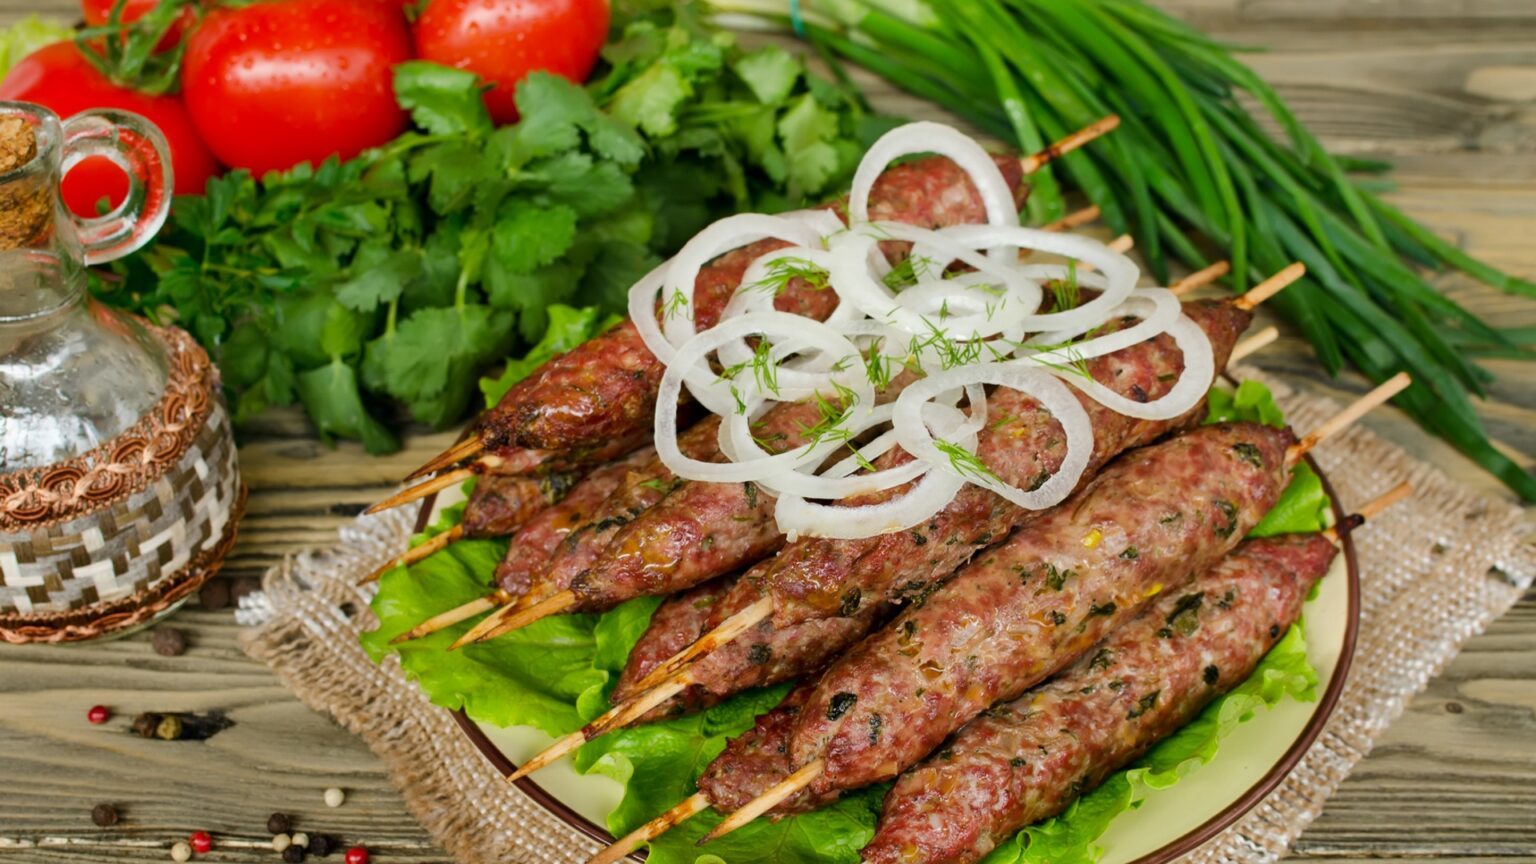 Блюда из баранины наибольшей популярностью пользуются в Узбекской, Татарской, Турецкой кухнях.  Блюда насыщены неповторимым ароматом и вкусом. Ассортимент банкетных блюд из мяса баранины огромен.